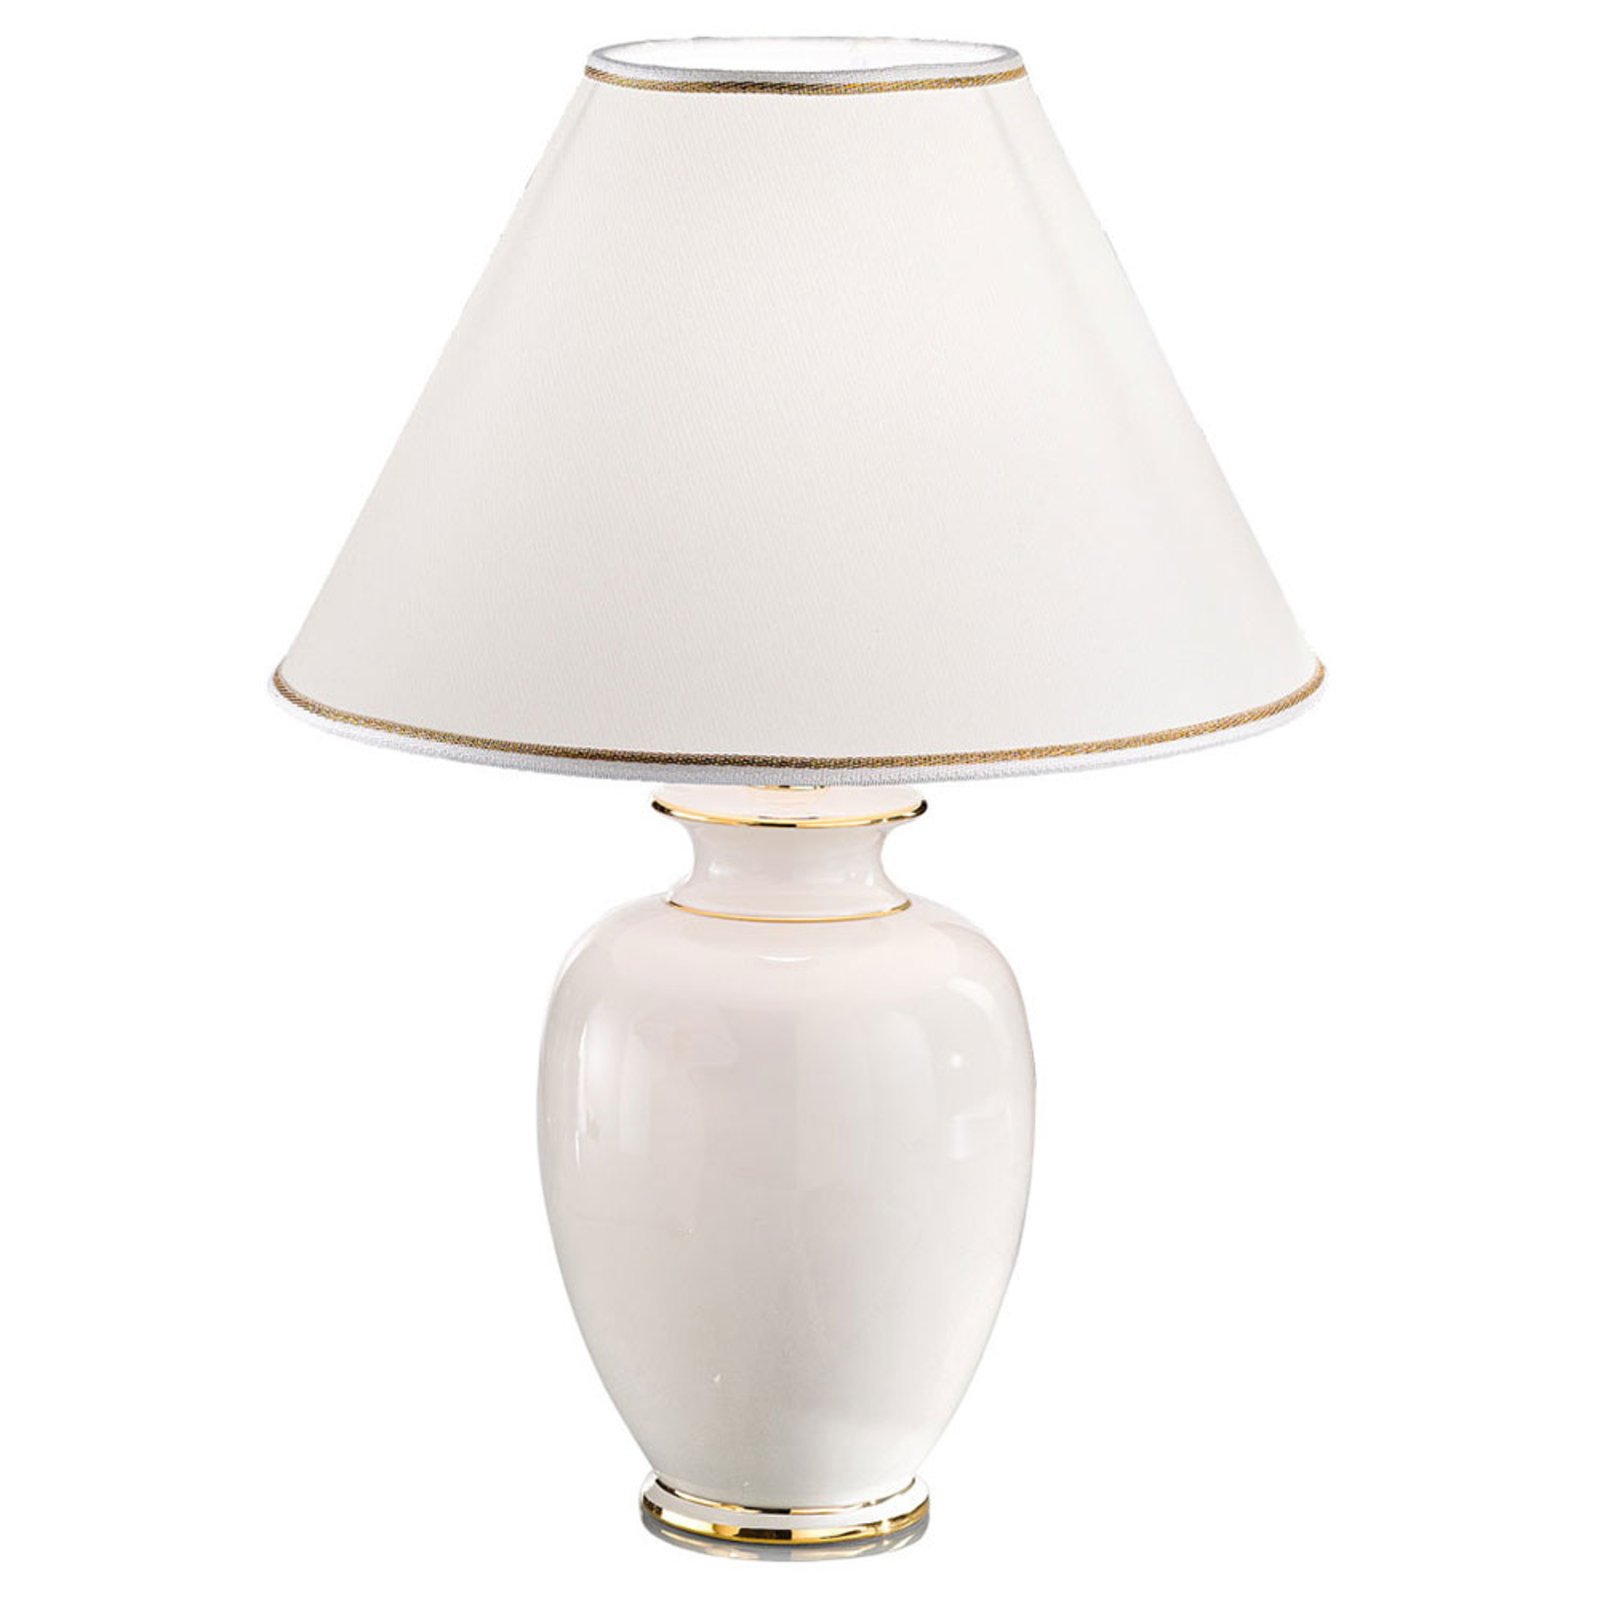 Giardino Avorio table lamp in white/gold, Ø 40 cm